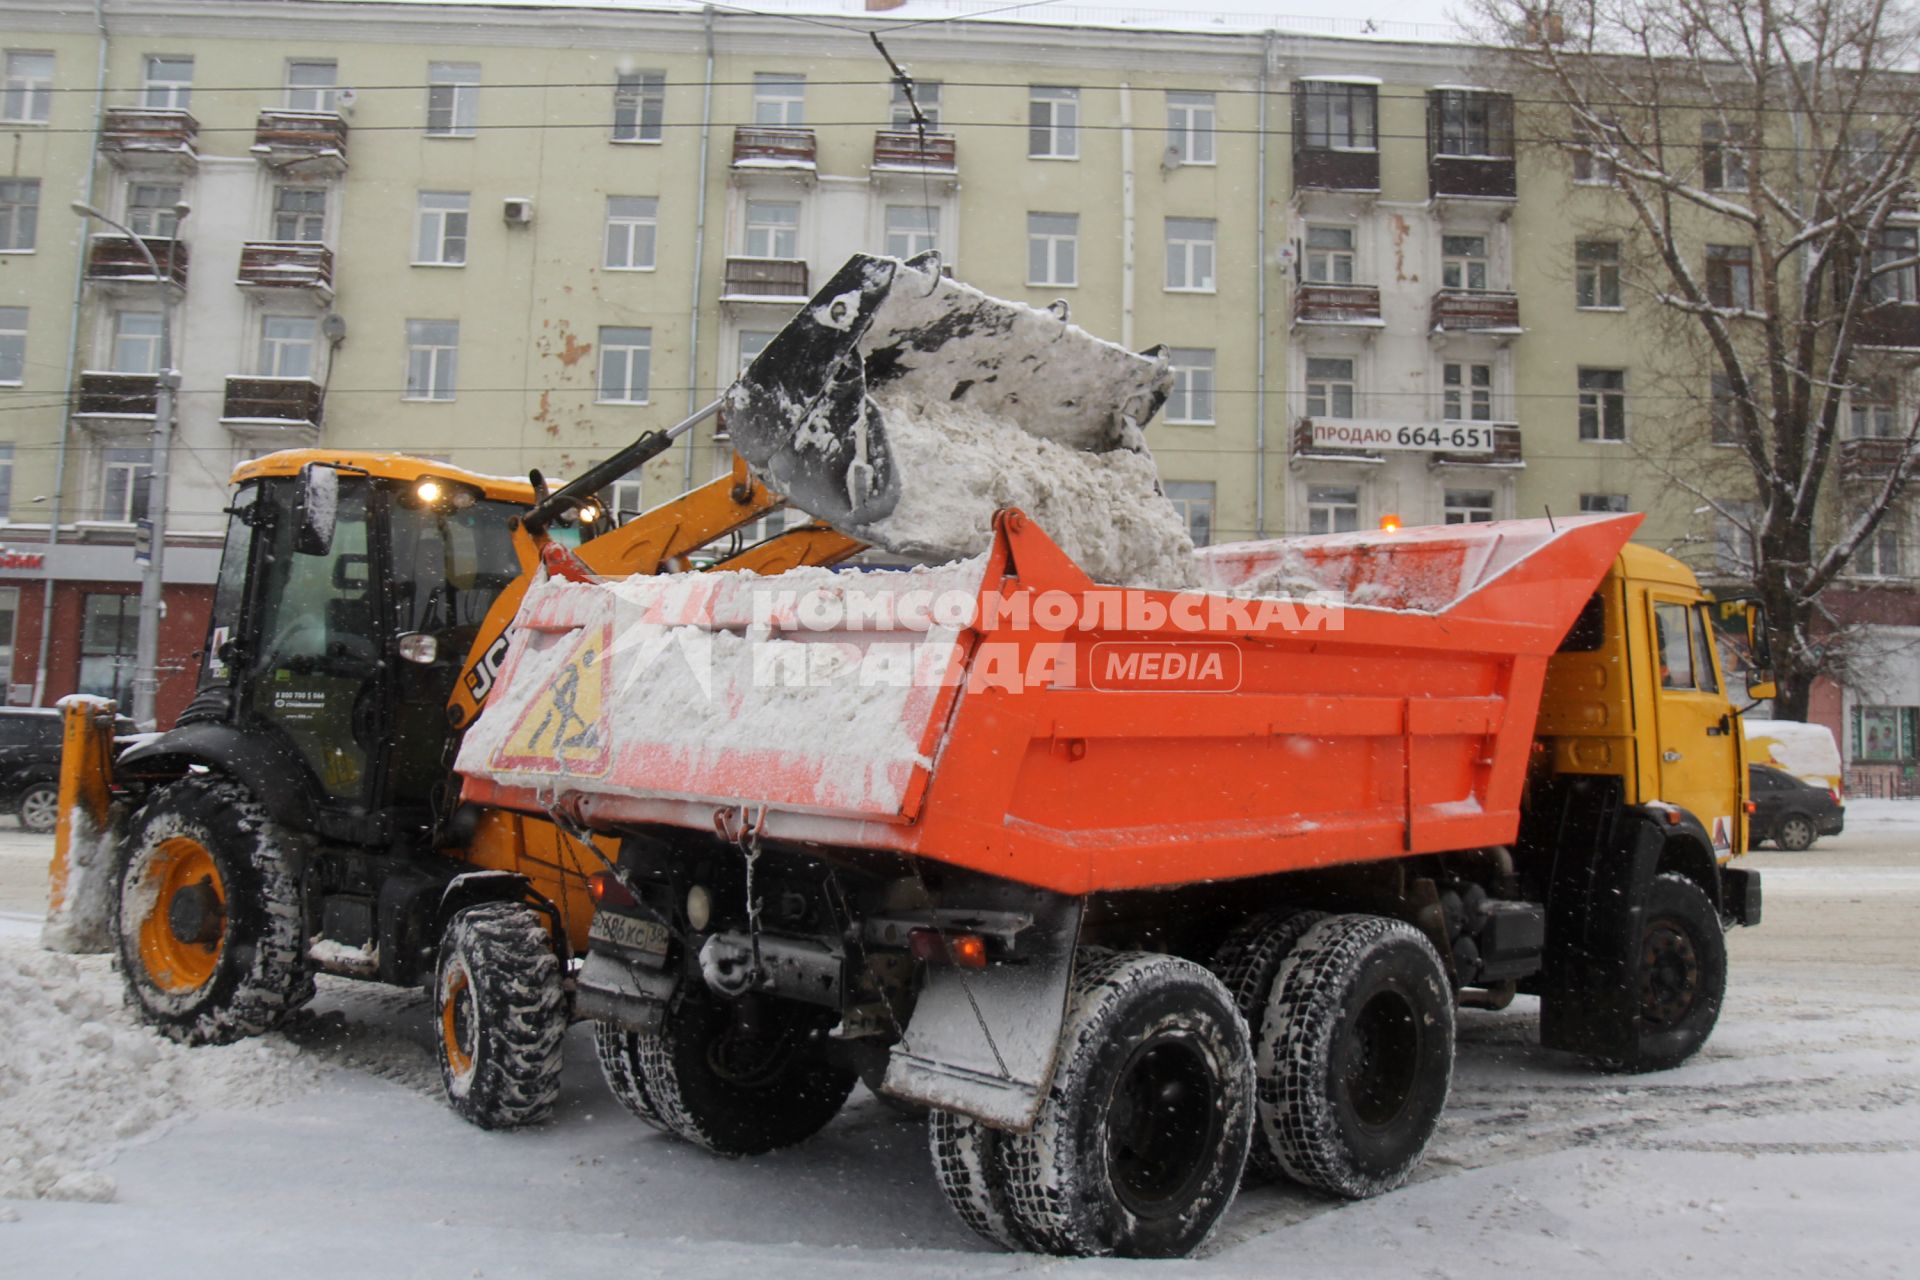 Иркутск. Снегоуборочная техника на улицах города.